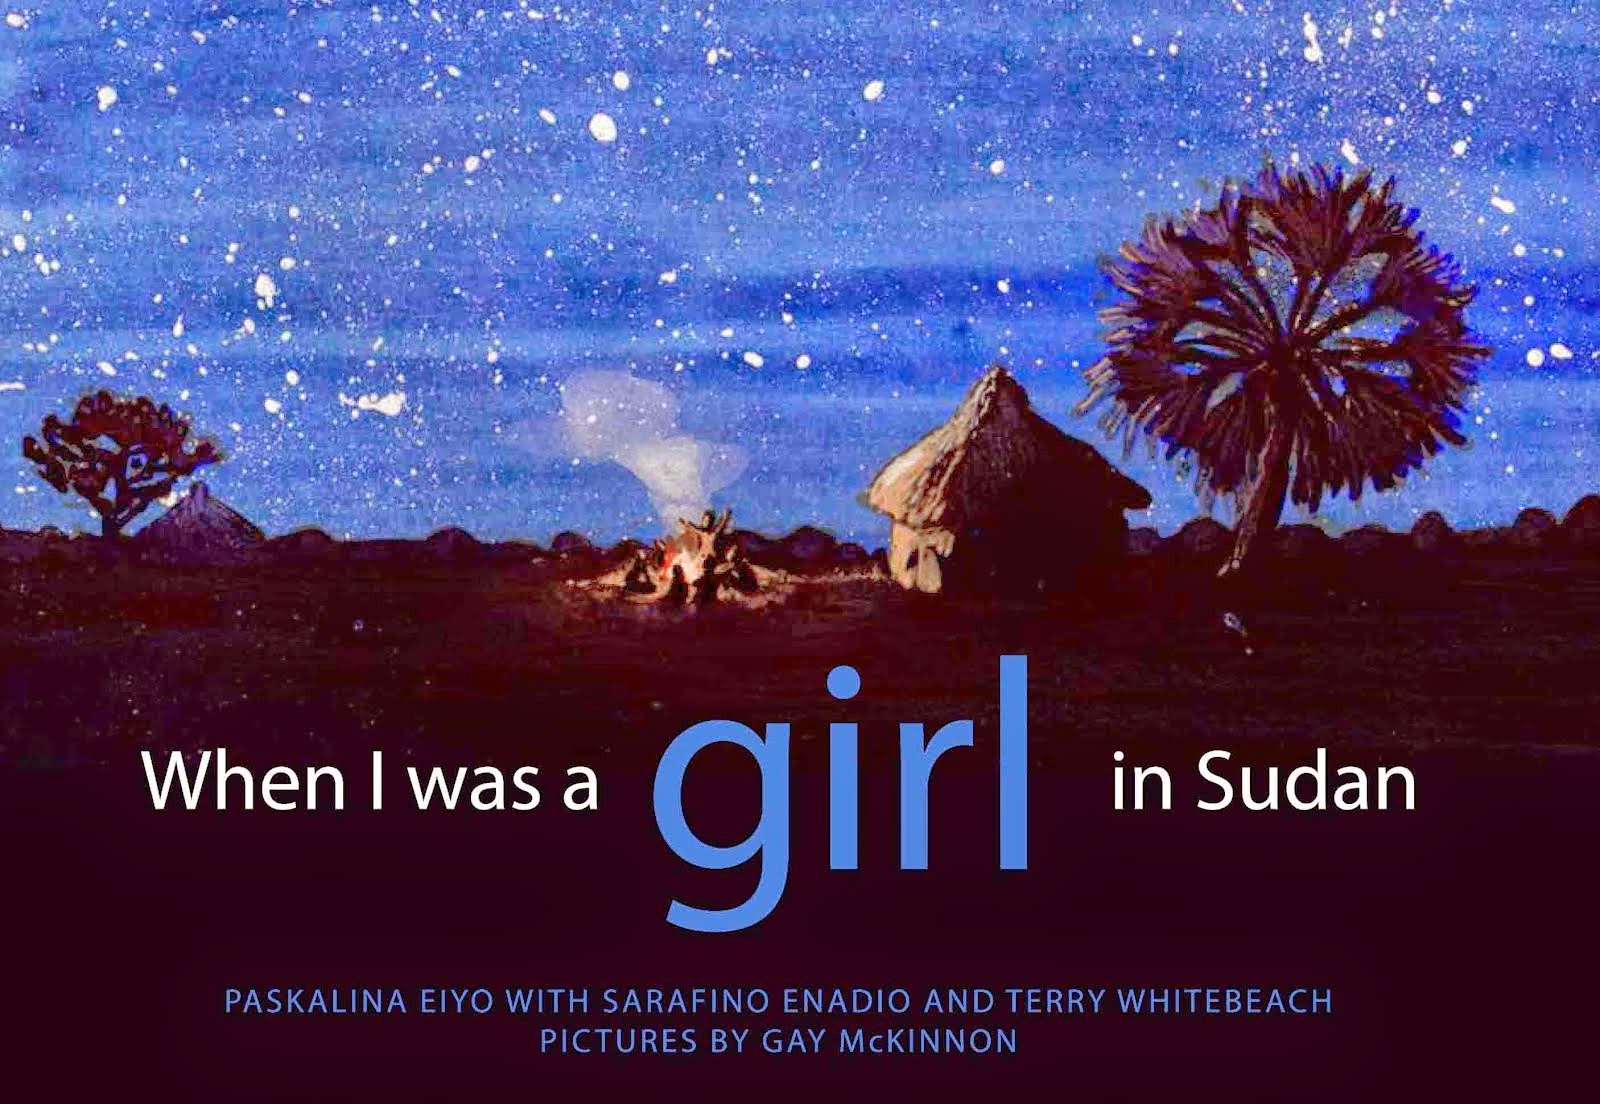 Sudan picture books